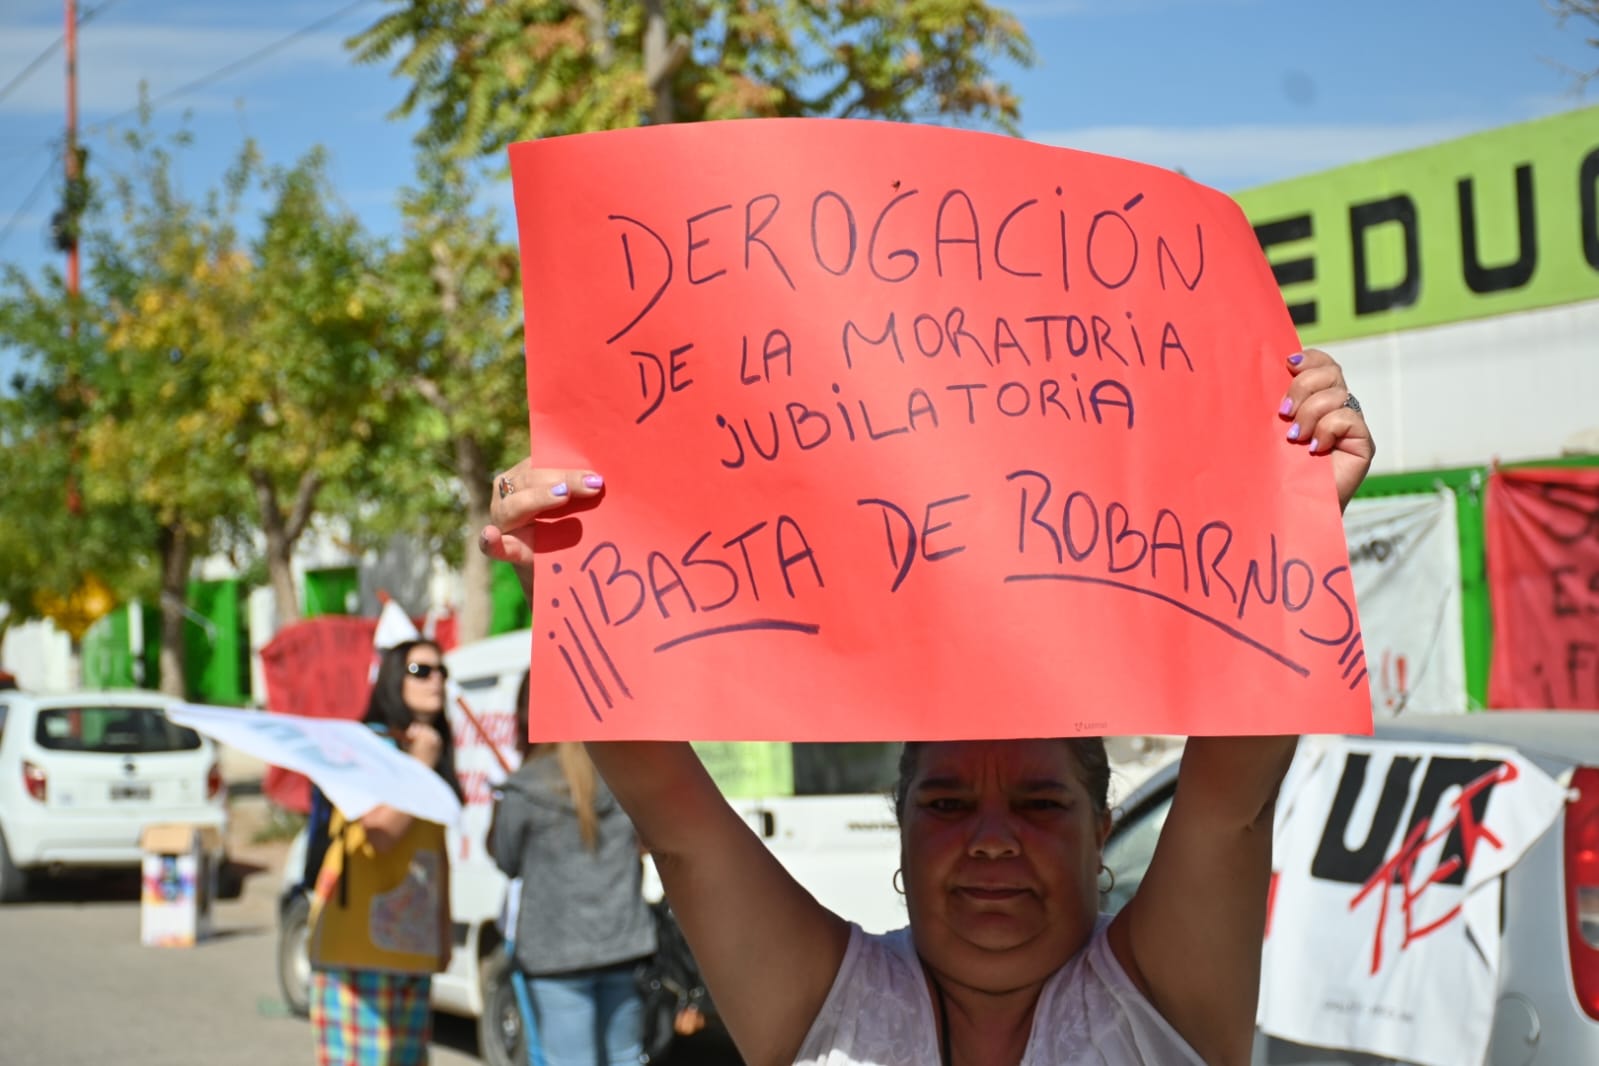 La manifestación comenzó a las 11. Foto: Florencia Salto